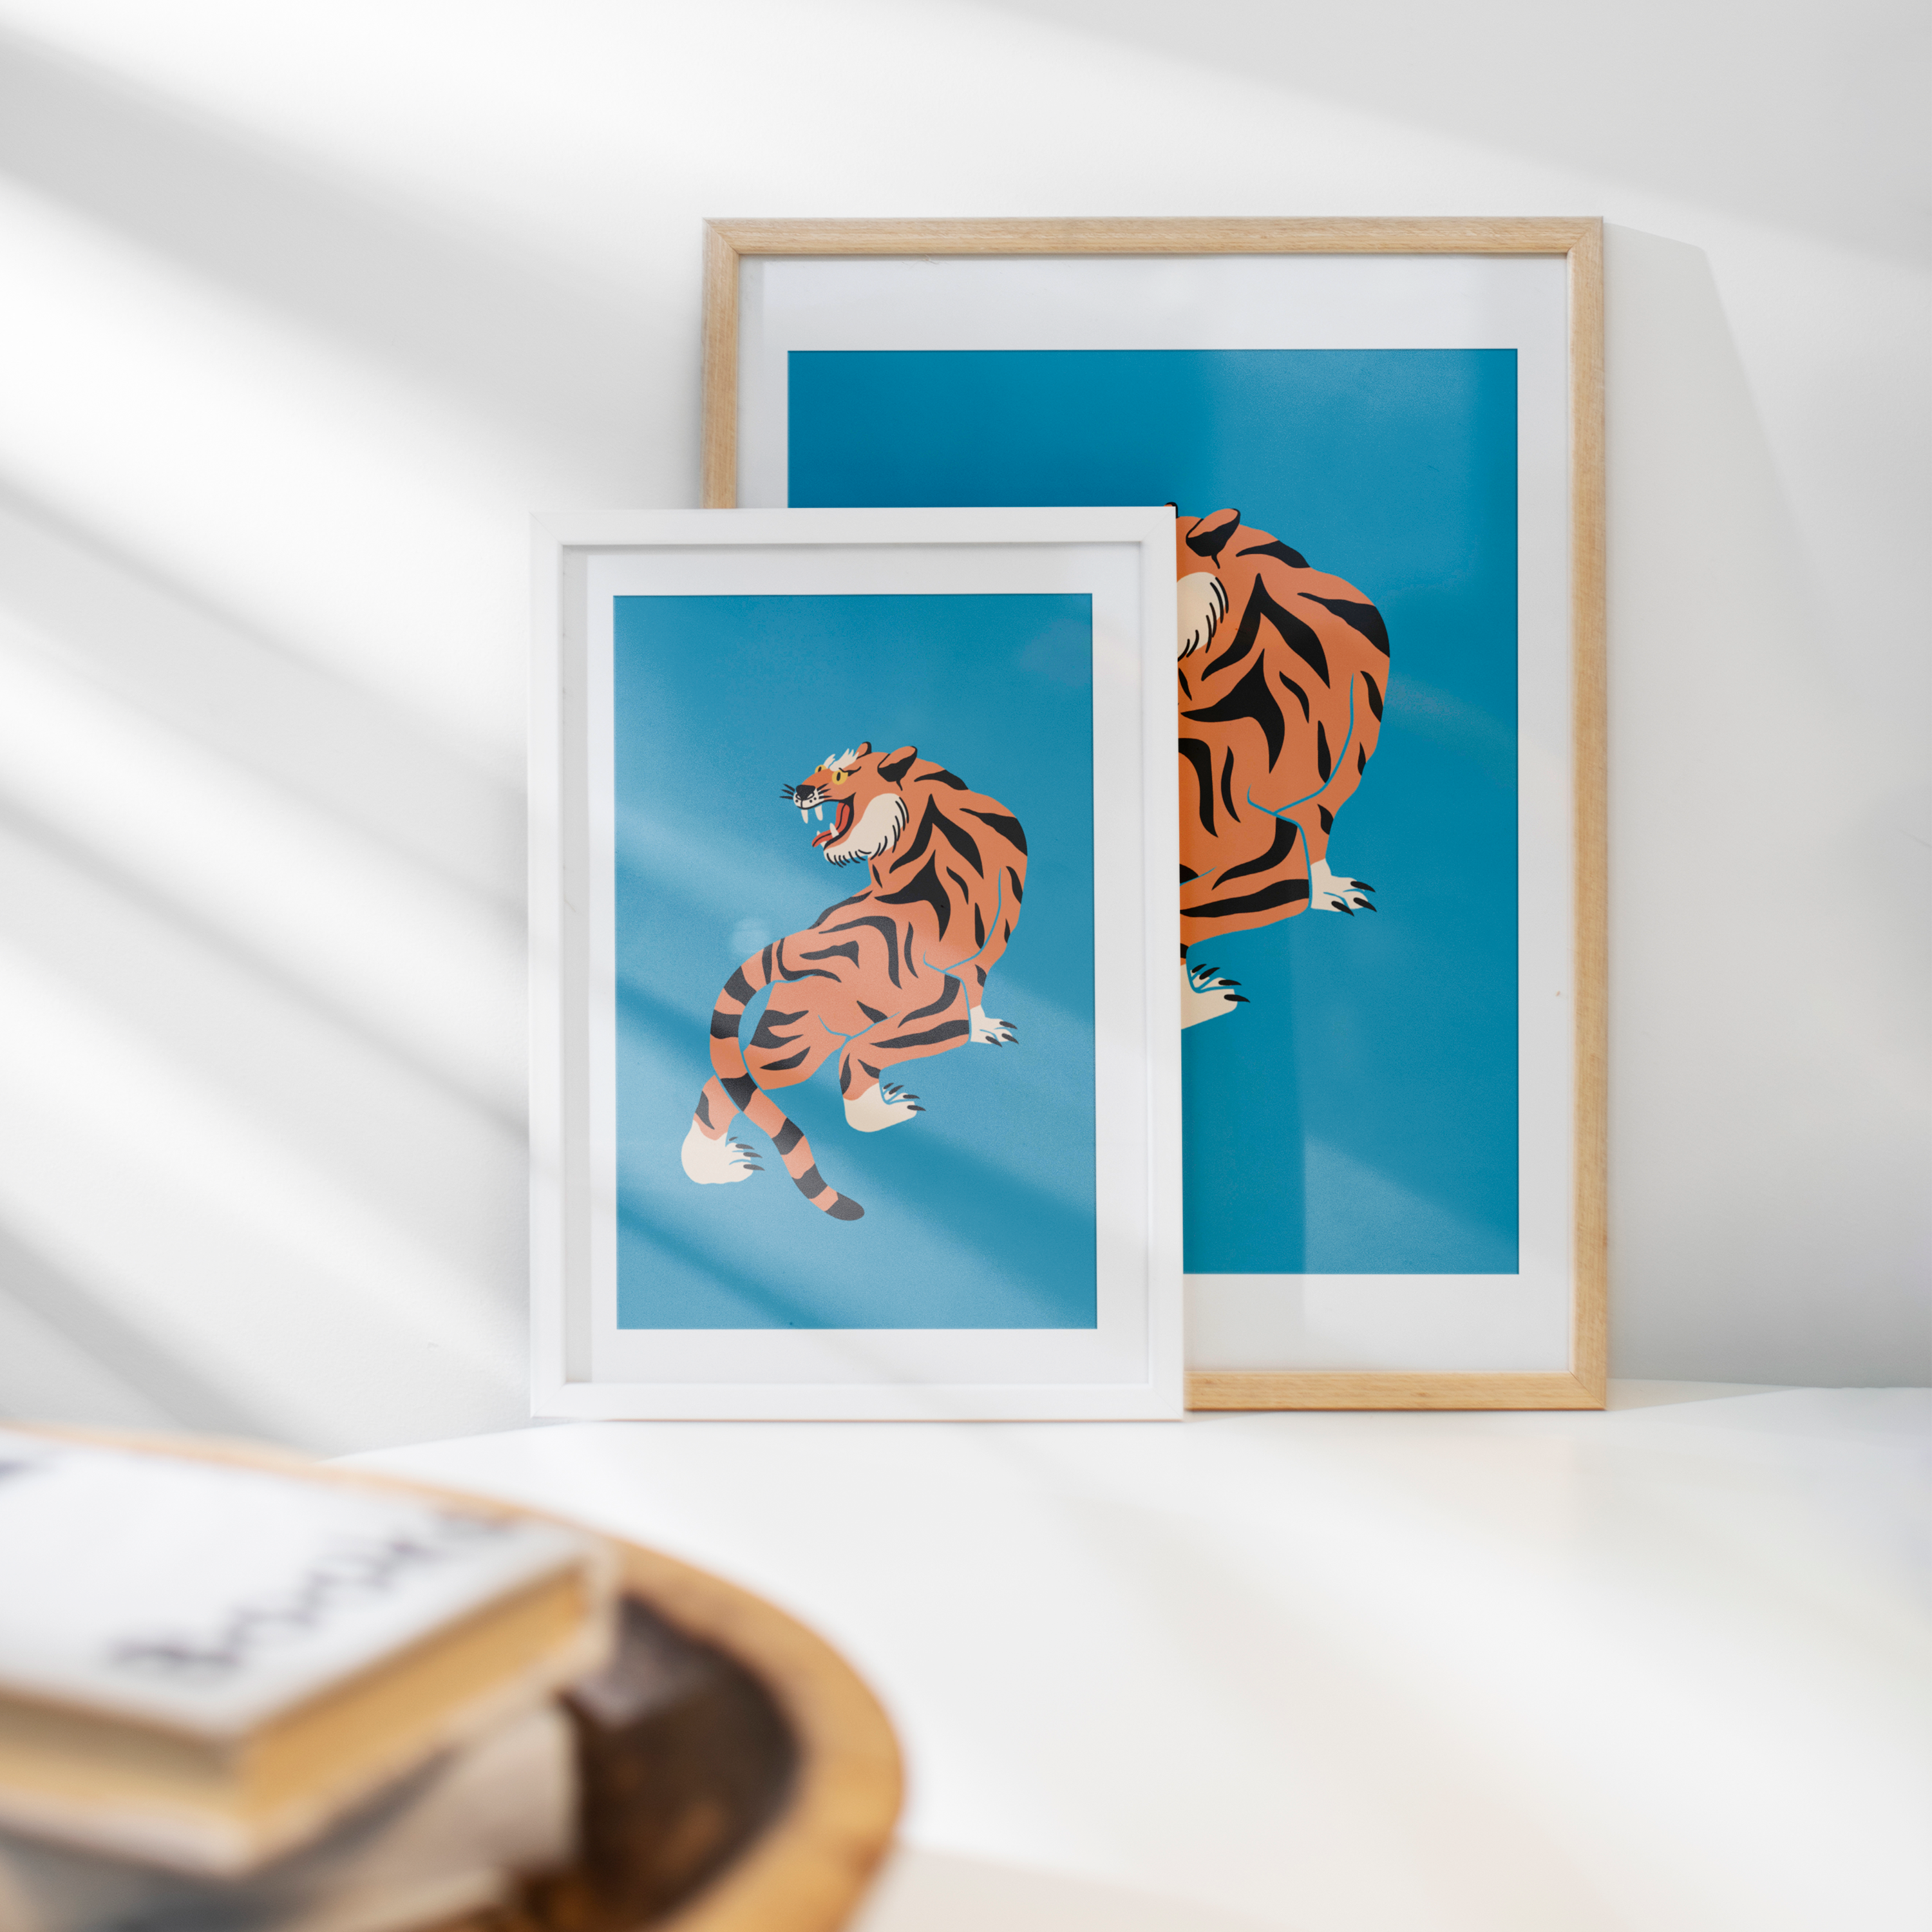 Affiche Blue Tiger cadre blanc et bois